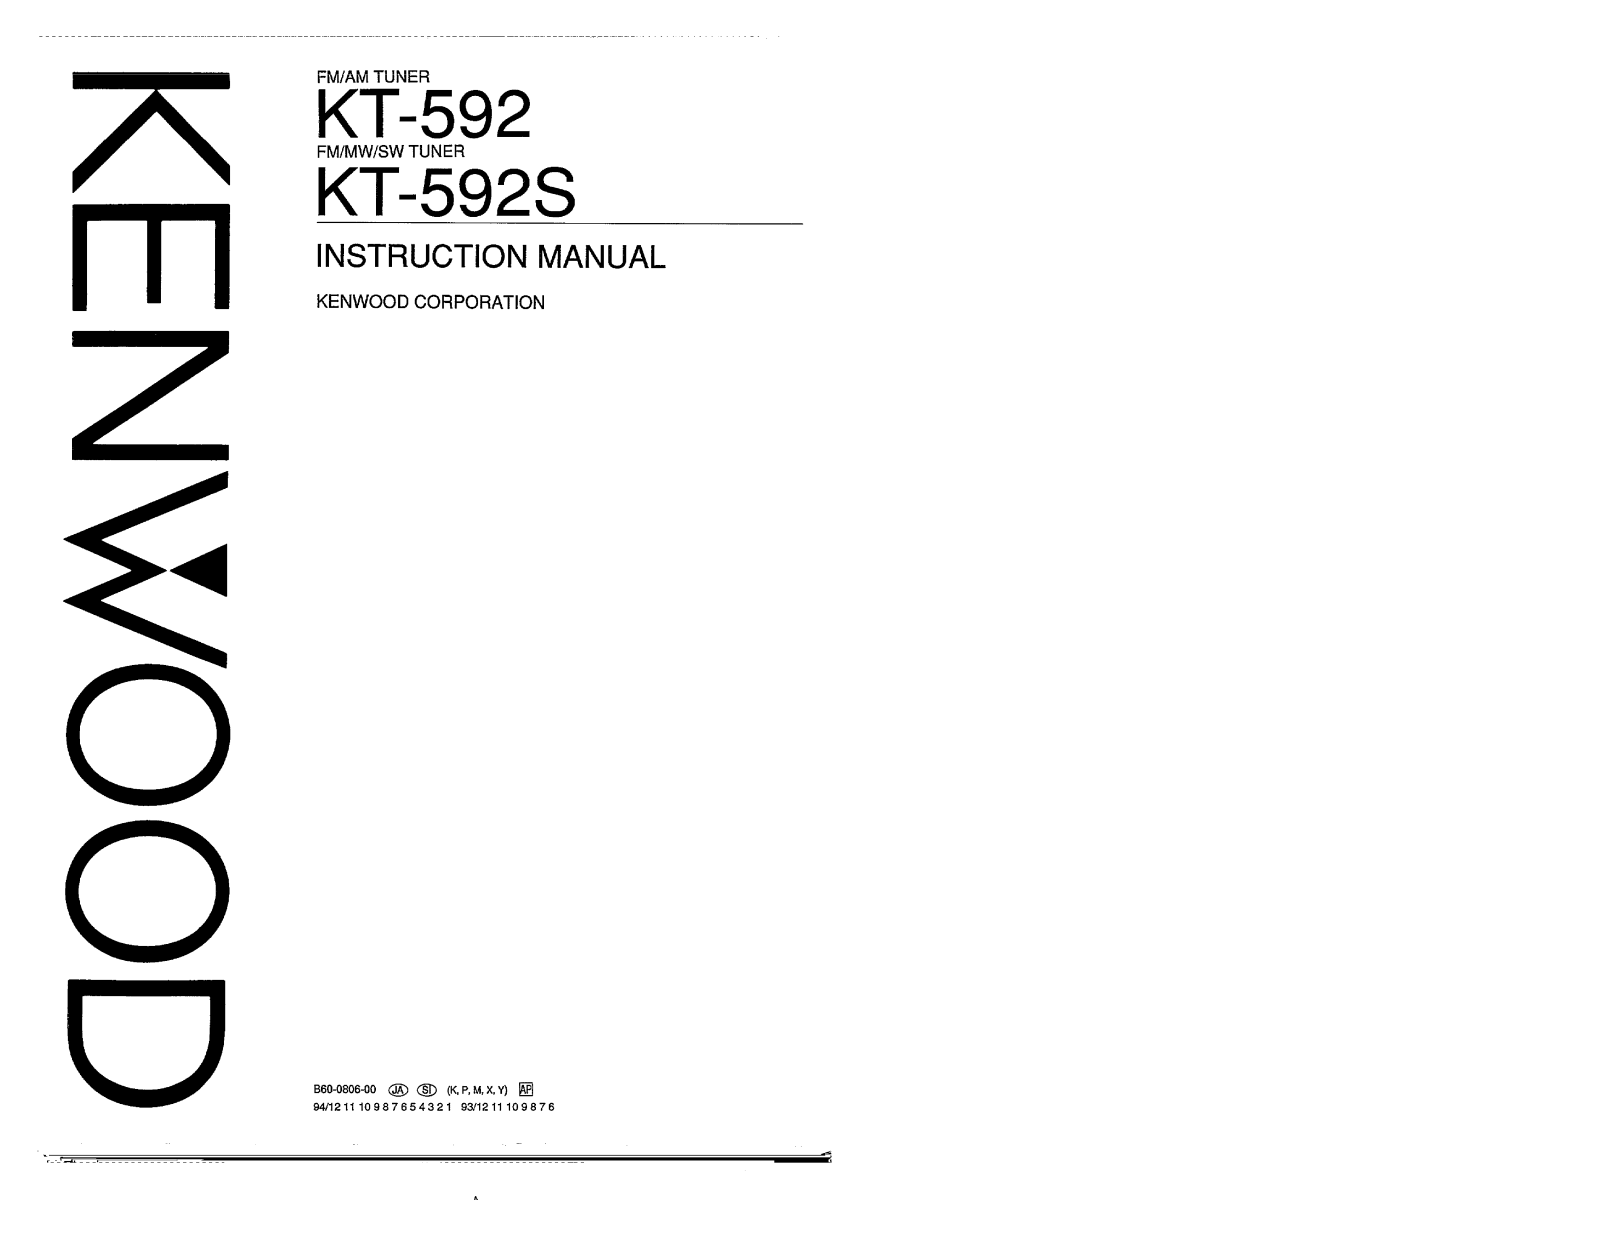 Kenwood KT-592, KT-592S Owner's Manual